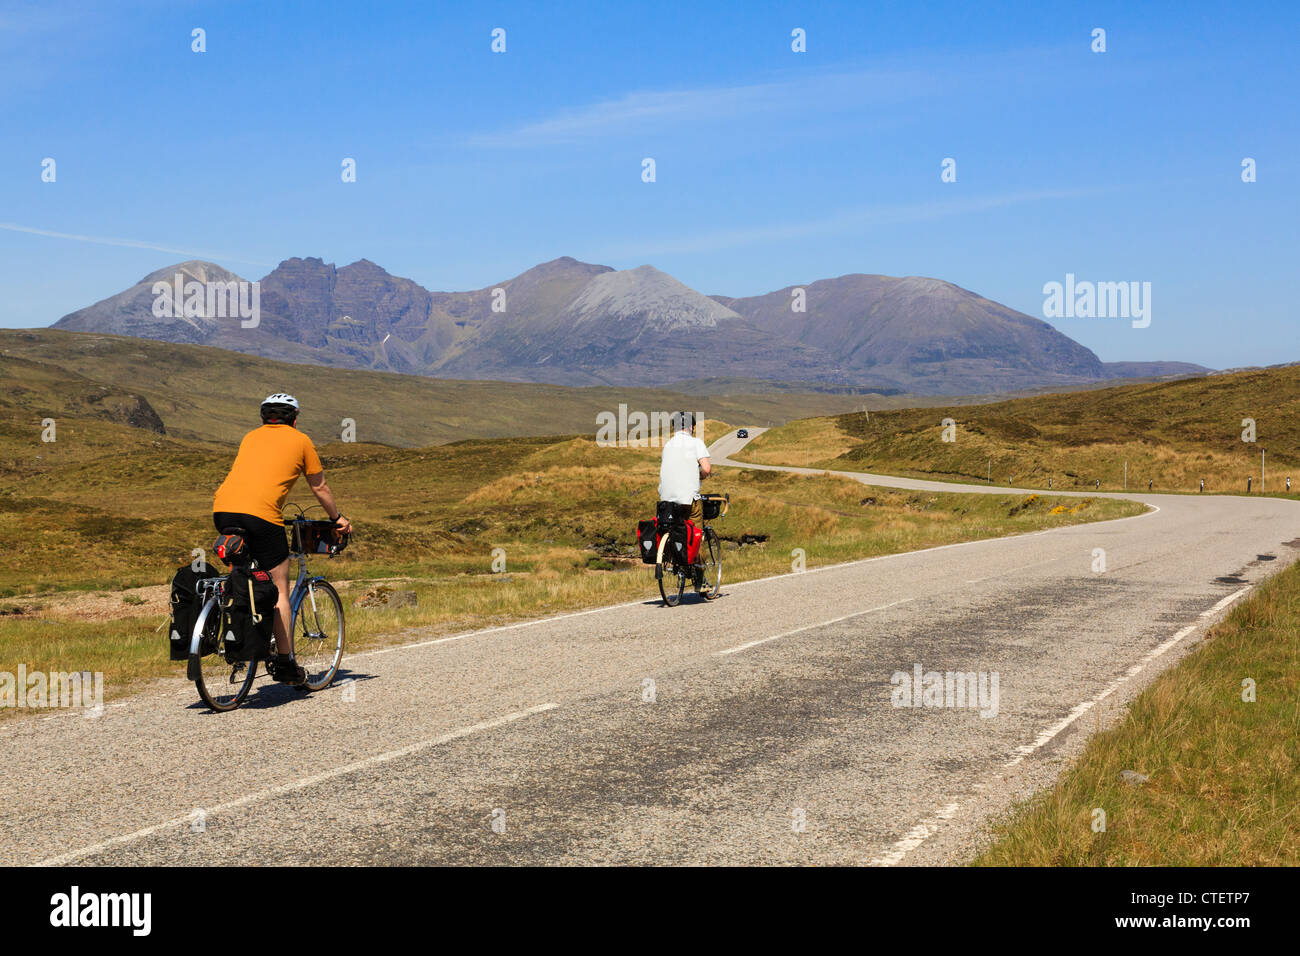 Zwei Radfahrer Radfahren auf einer ruhigen Landstraße in Richtung auf eine Teallach im nordwestlichen Highlands Dundonnell Wester Ross Ross und Cromarty Highland Schottland Großbritannien Stockfoto